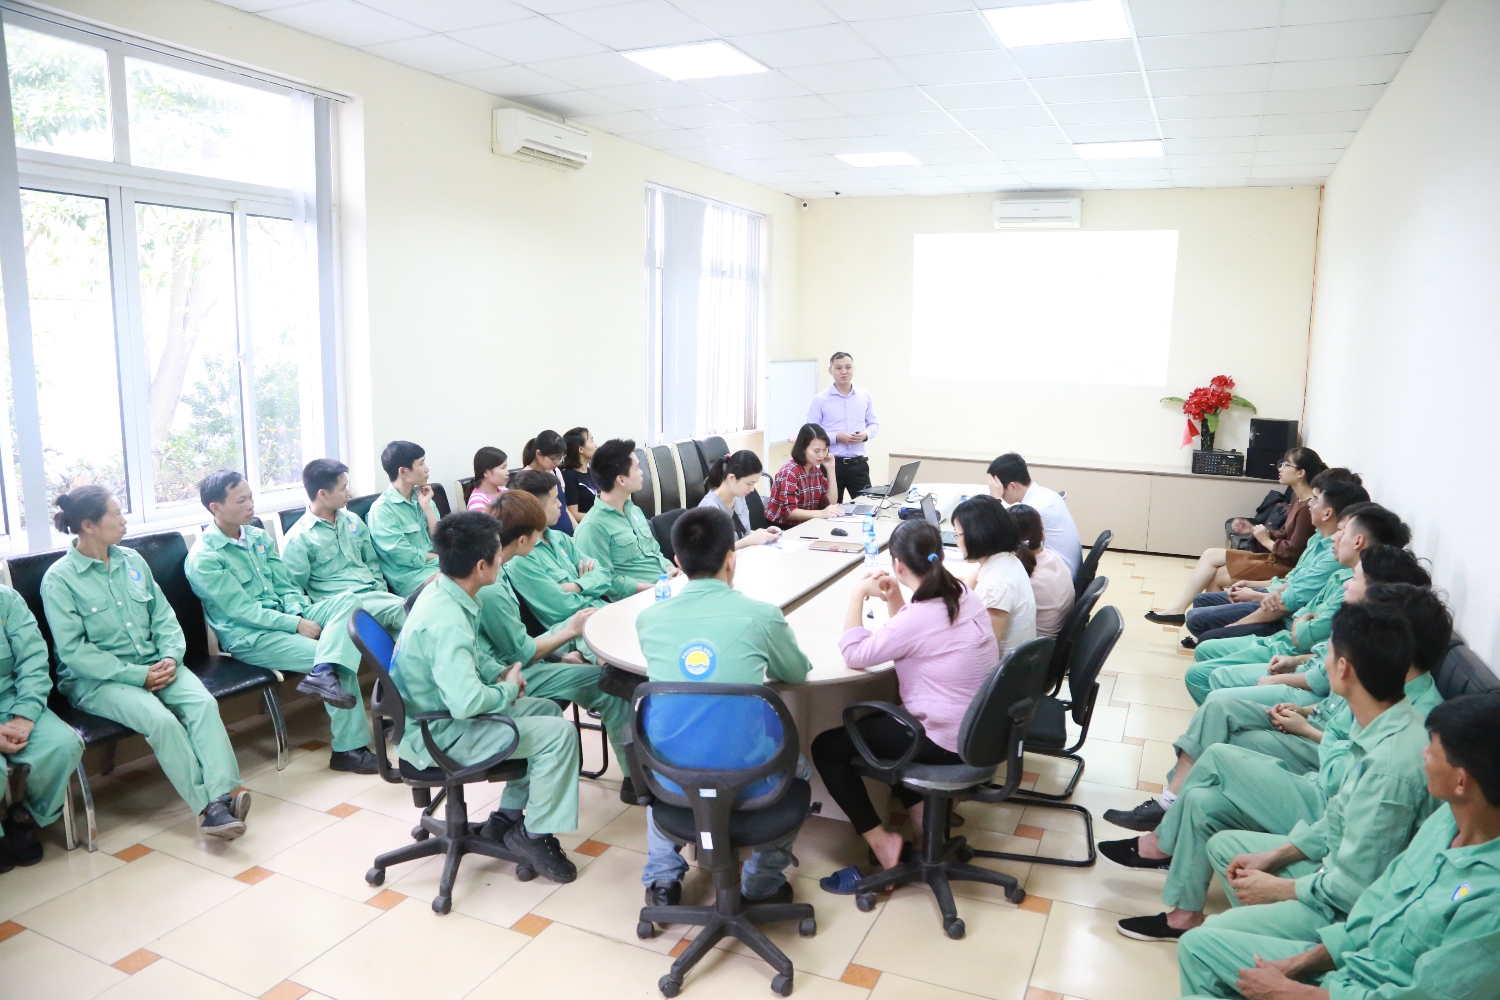 Phuong Anh Group tổ chức đào tạo văn hóa doanh nghiệp lần 1 